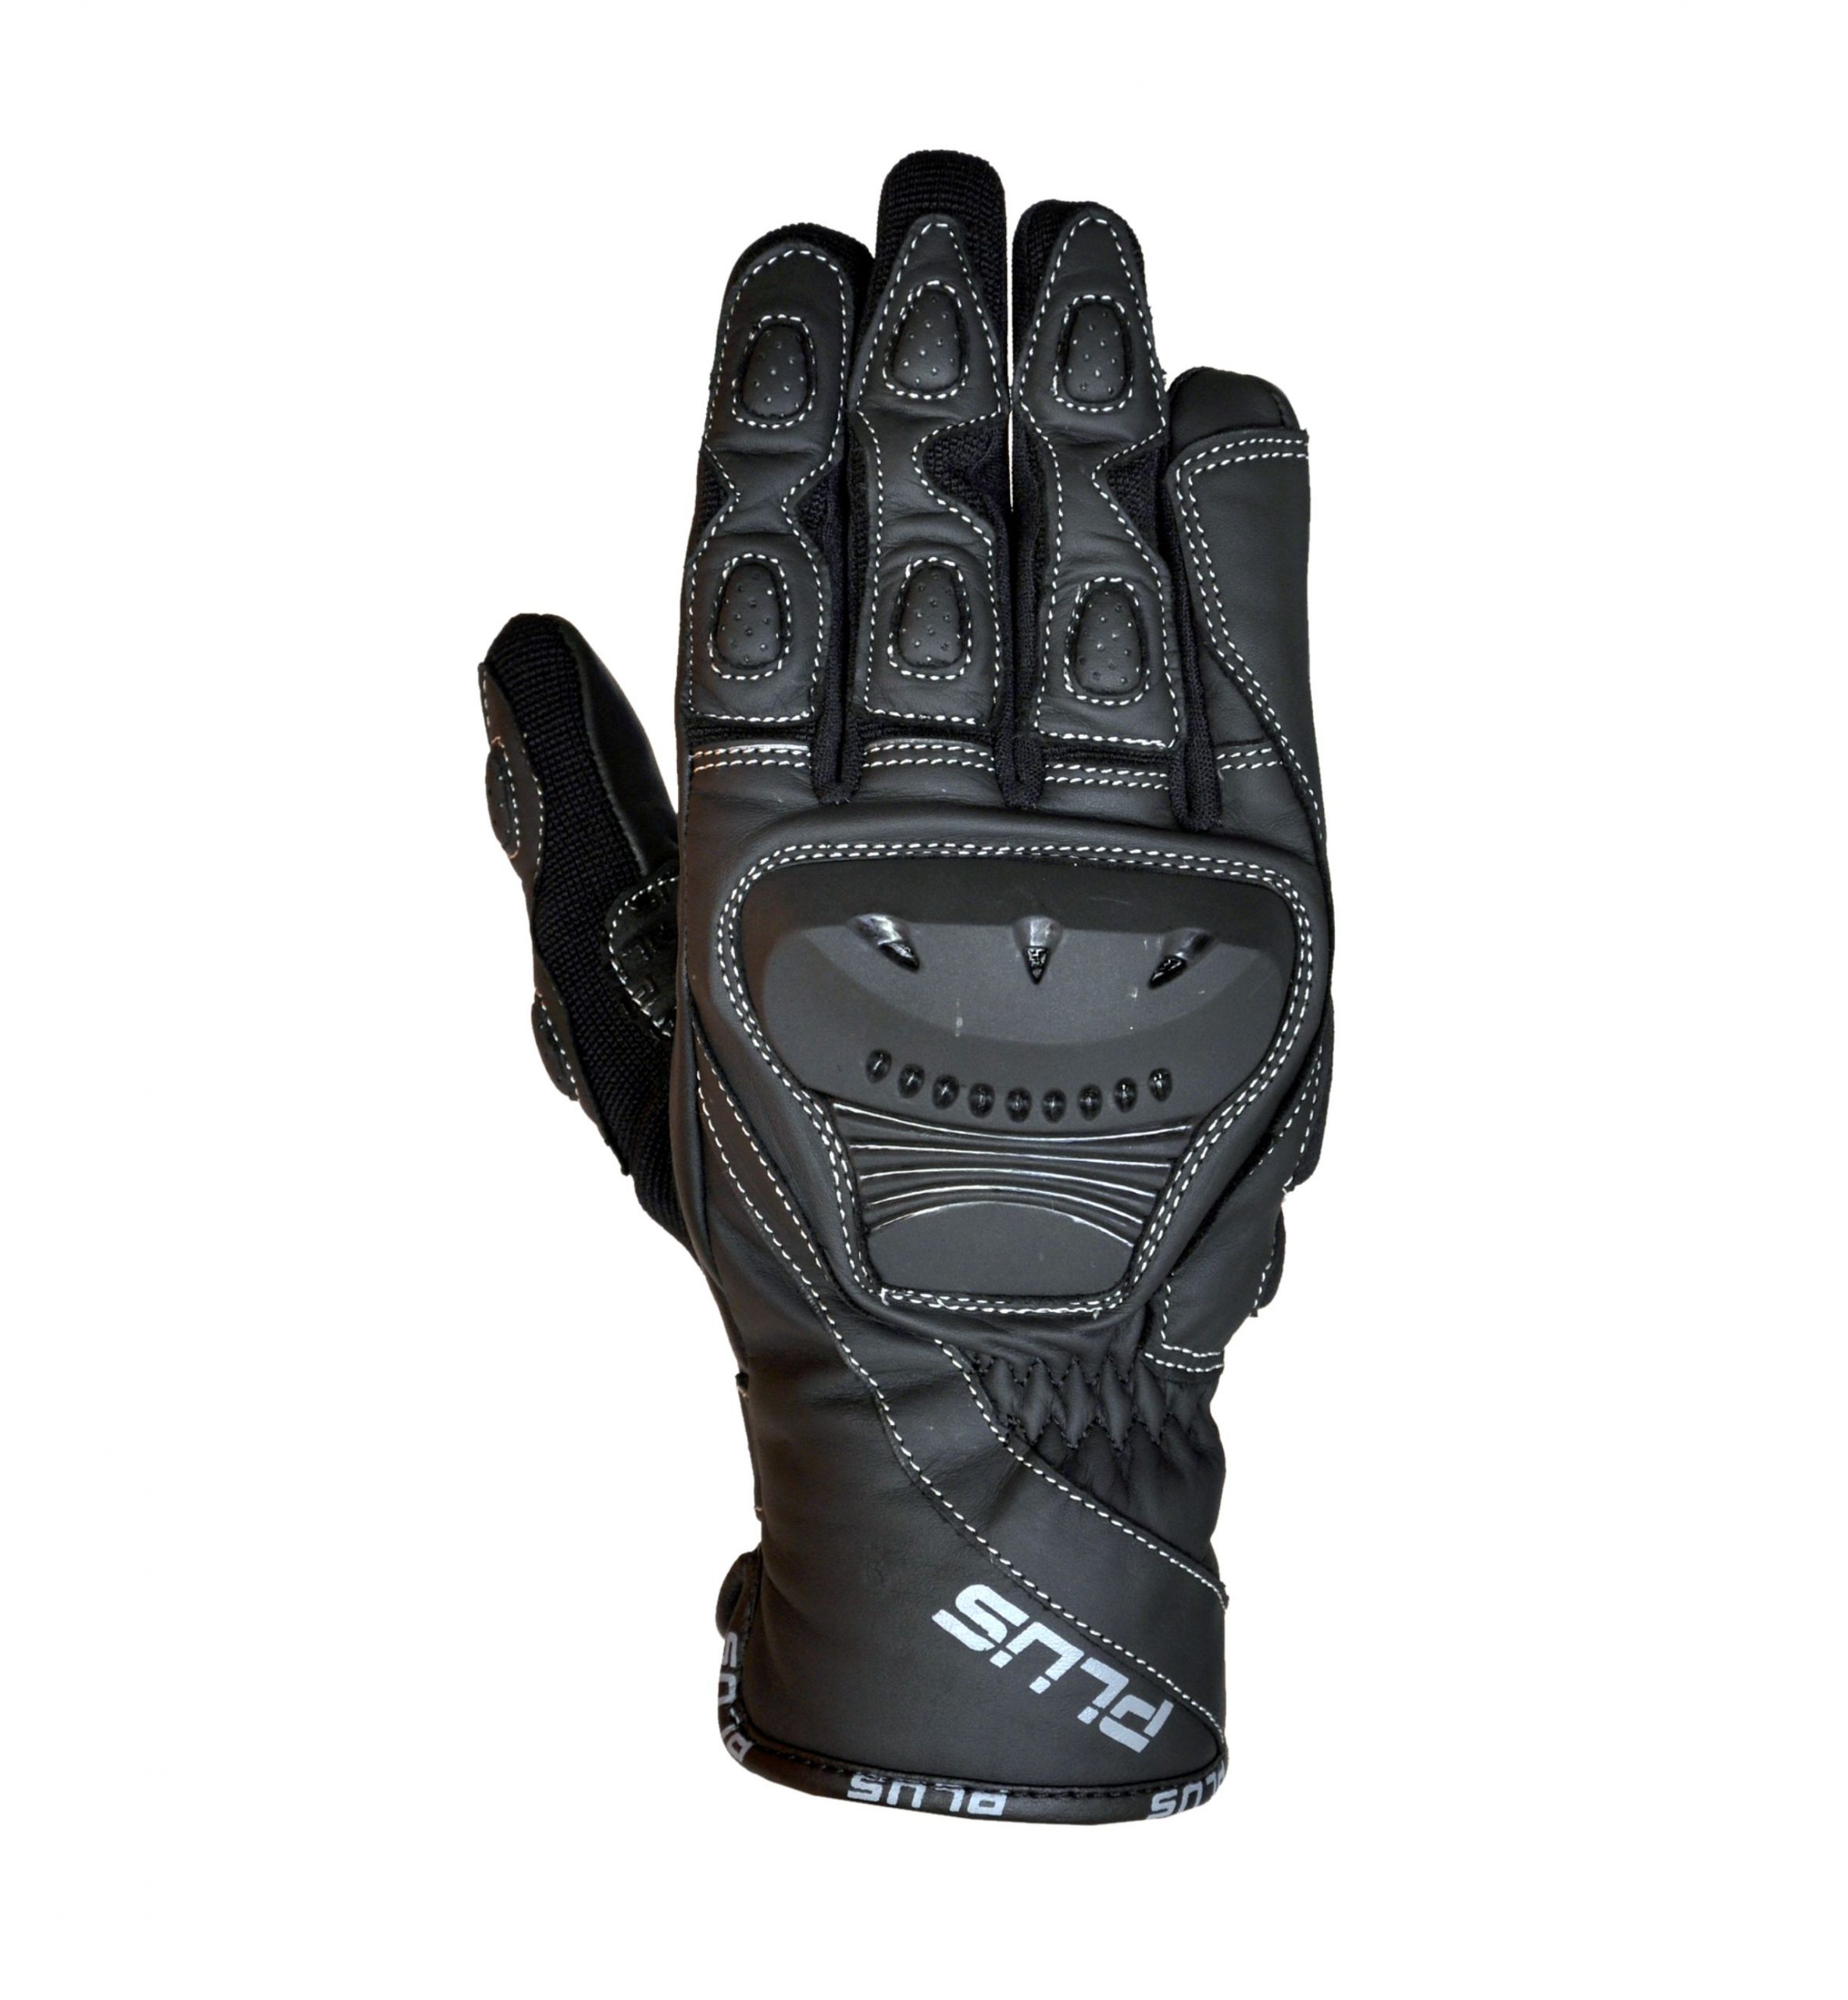 SPORTIE Gloves – $75 | PLUS Racing Gear